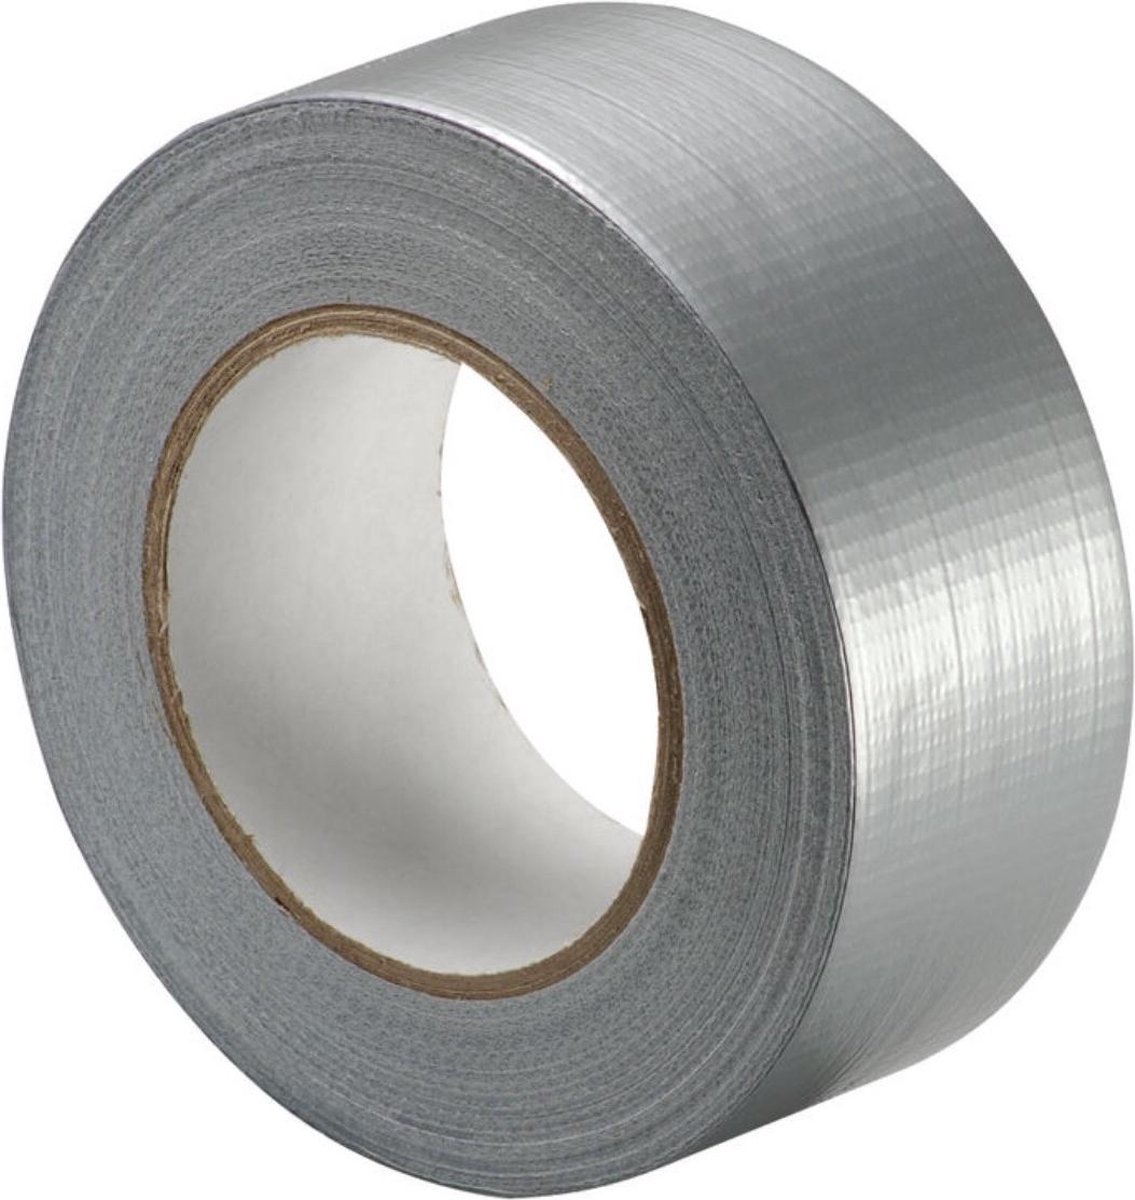 Klus & Reparatie Tape | Duct Tape | Duck Tape |Multi Purpose Tape | Waterproof |Zilver Tape | 50 mm - Merkloos